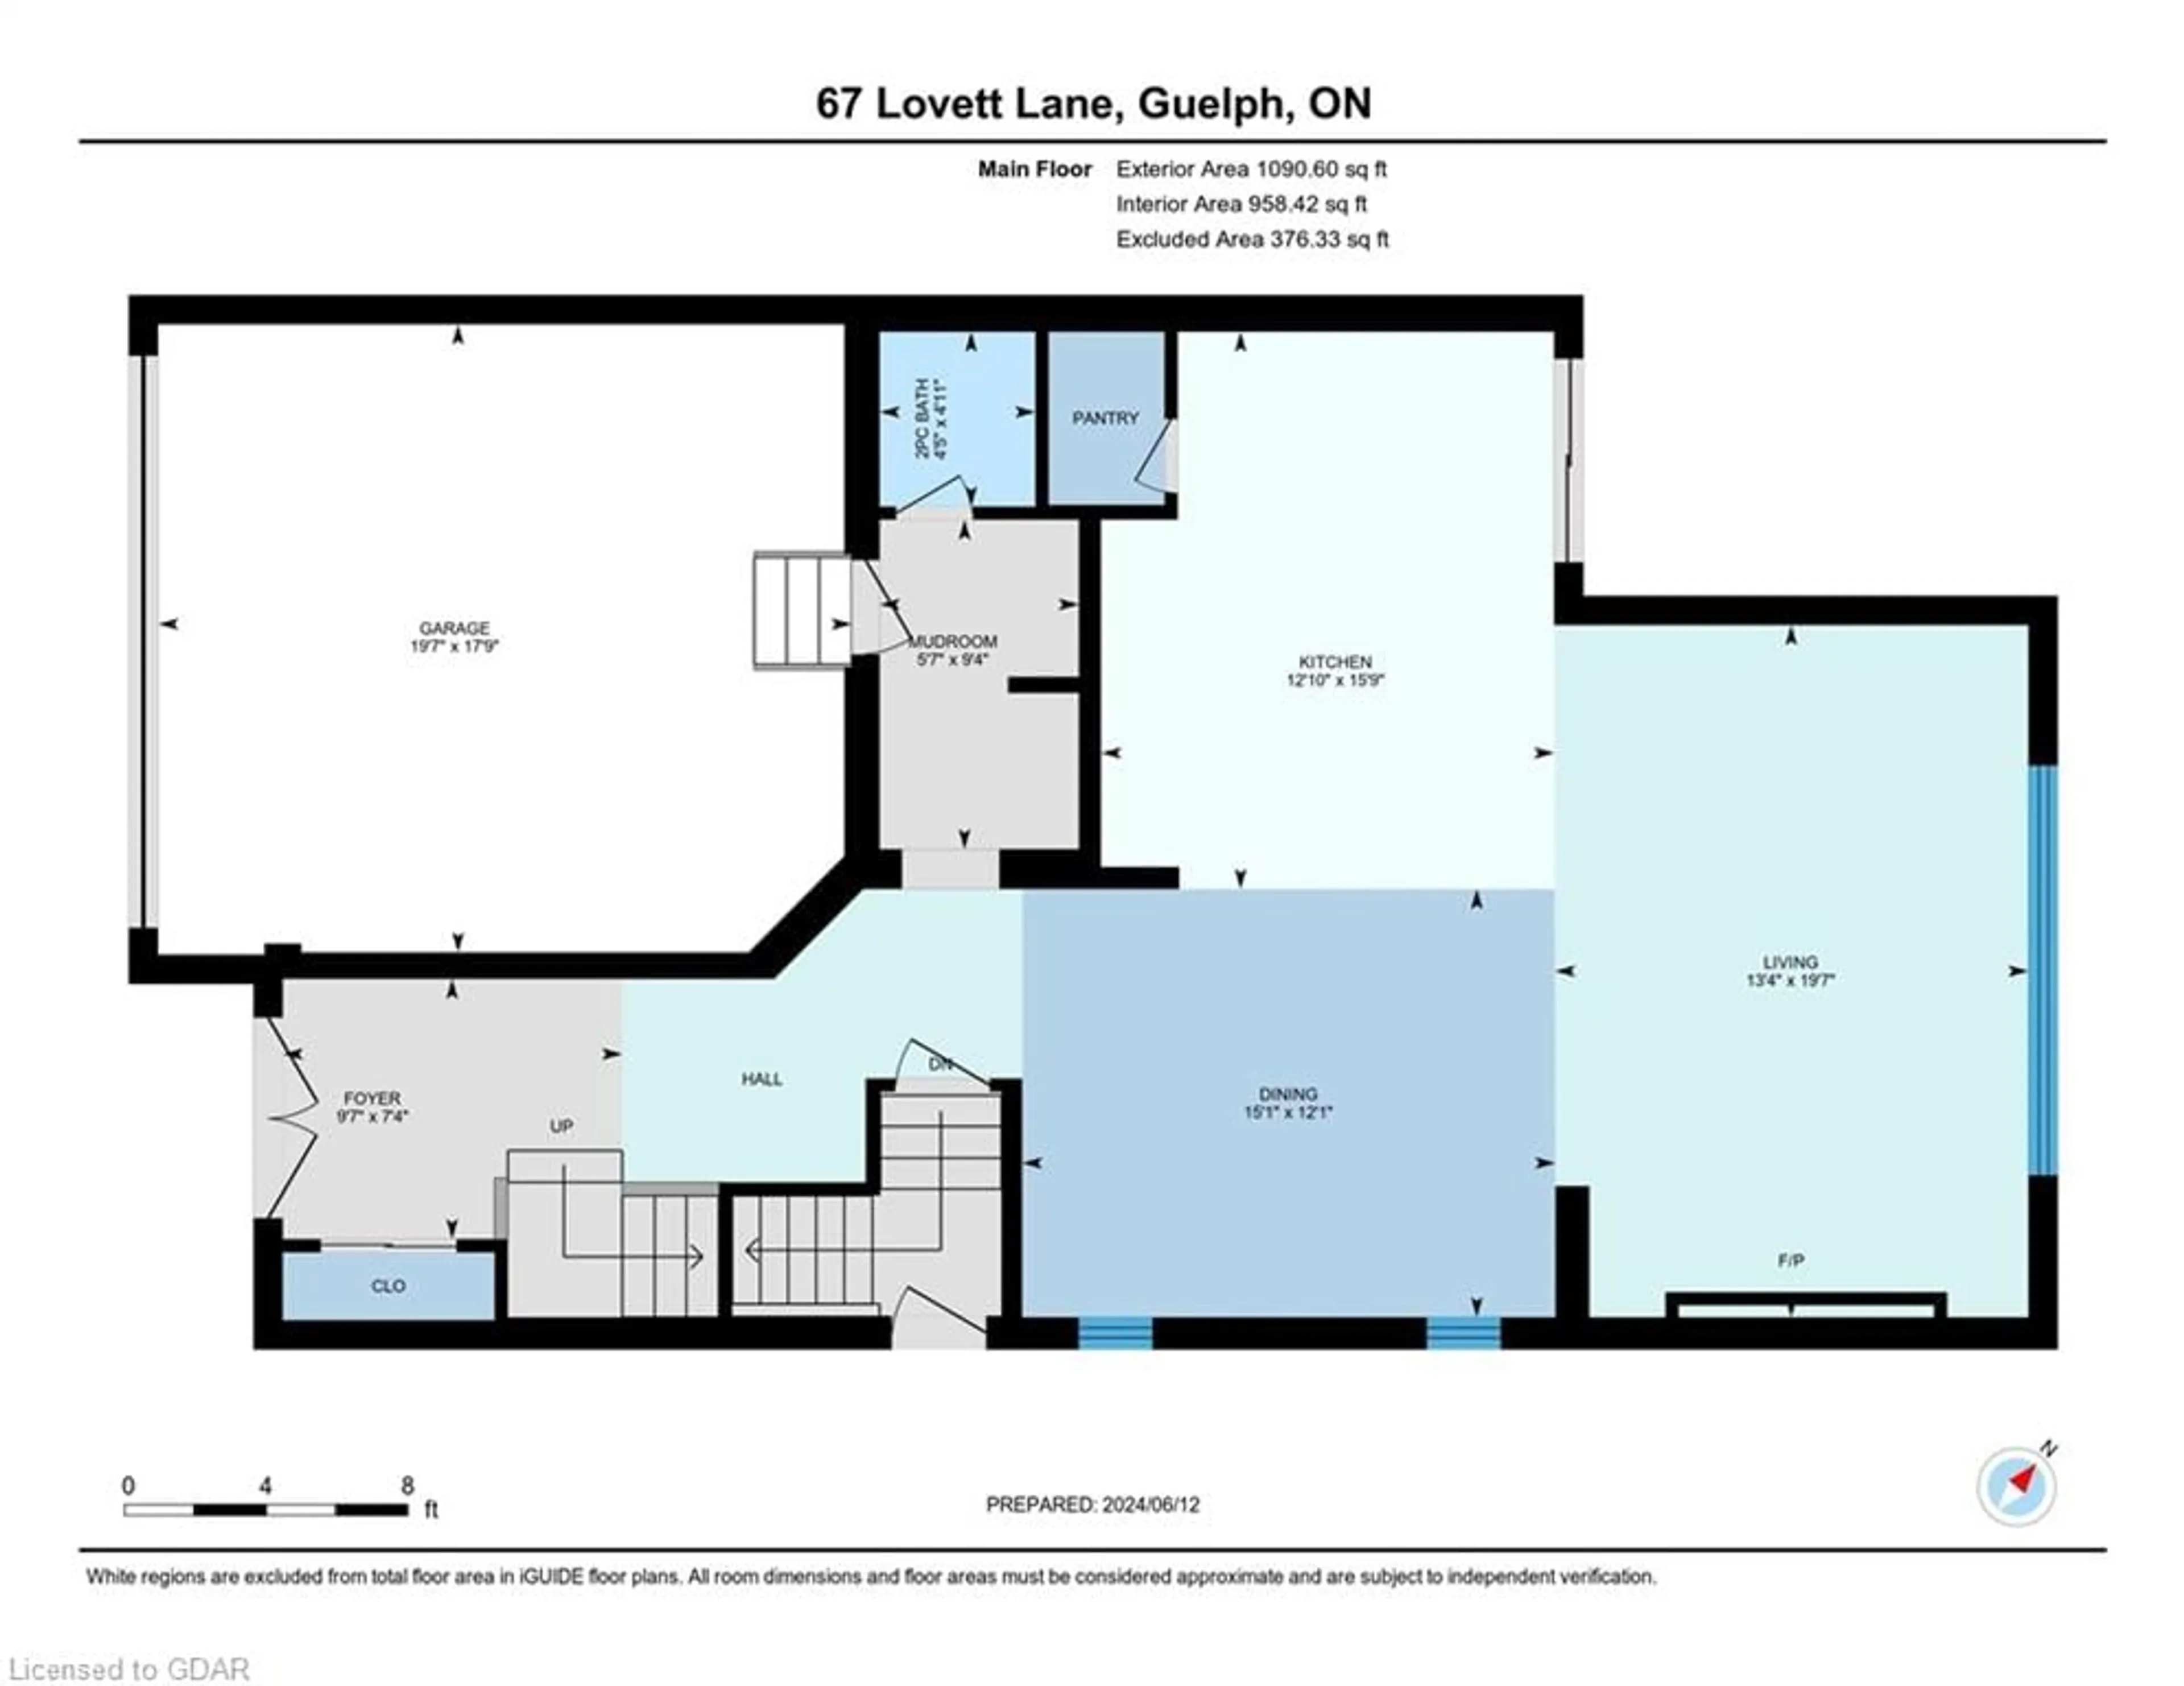 Floor plan for 67 Lovett Lane, Guelph Ontario N1G 0H3